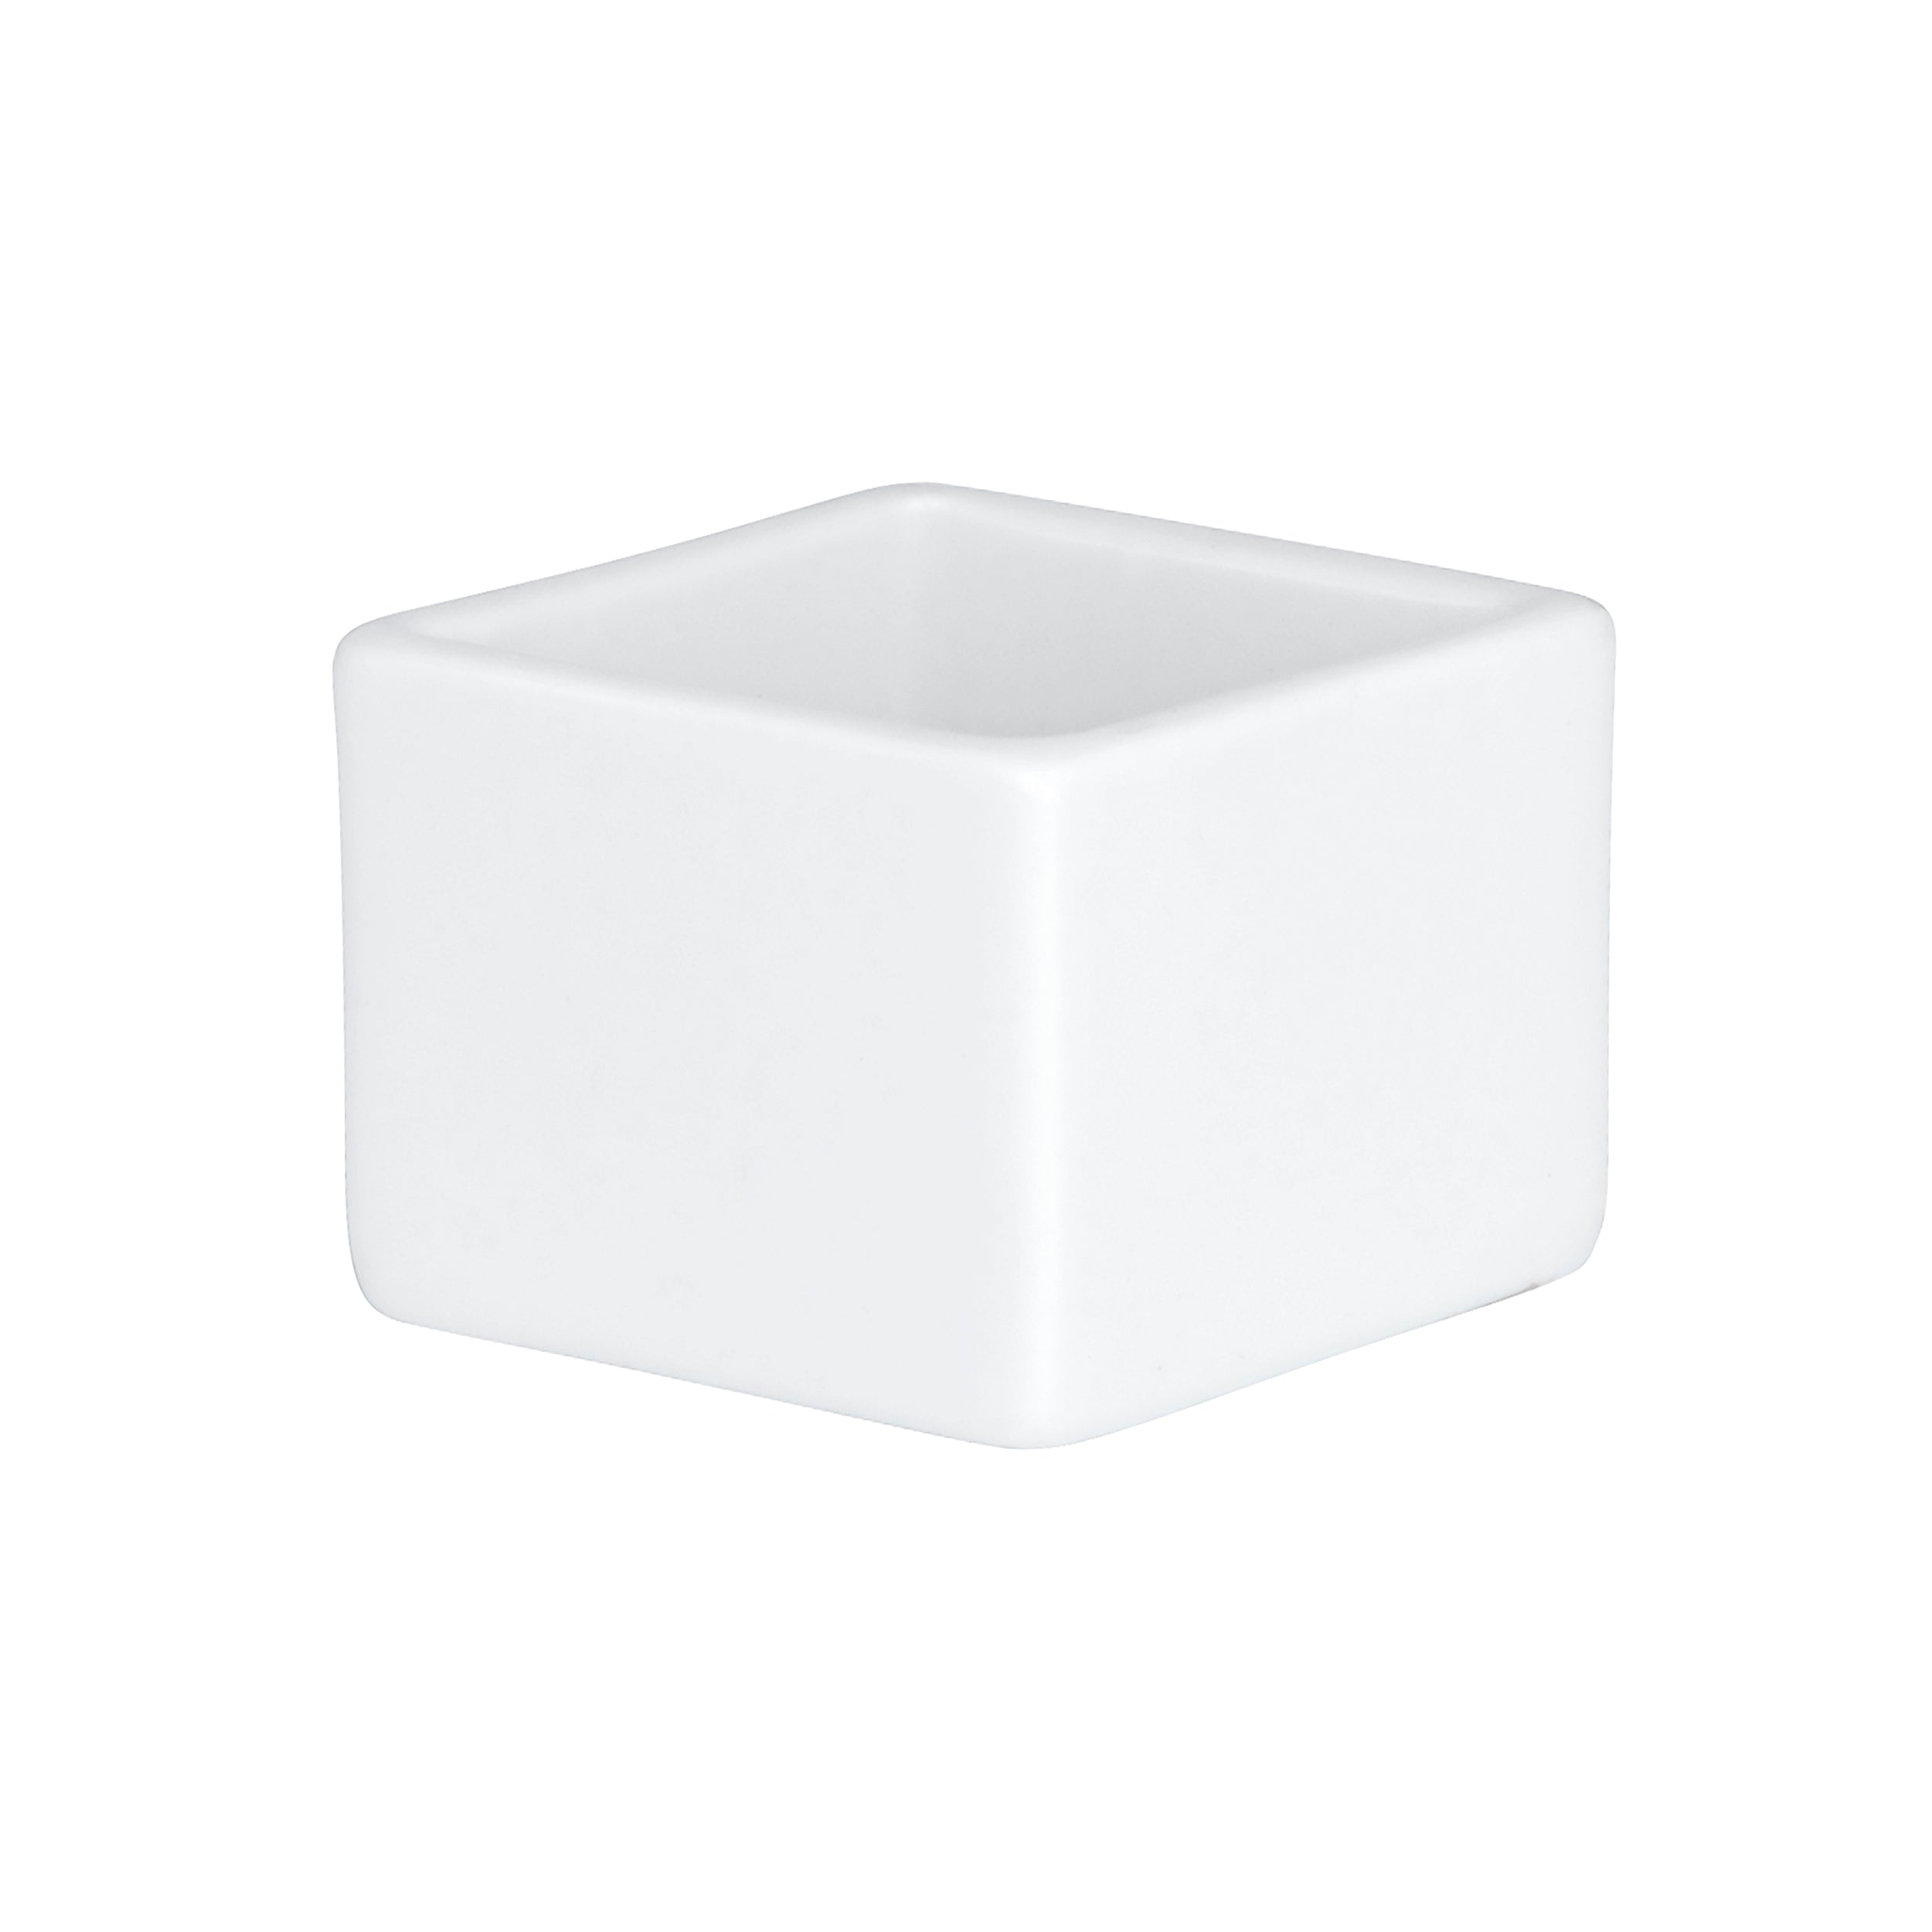 Dish Cube Square 1oz